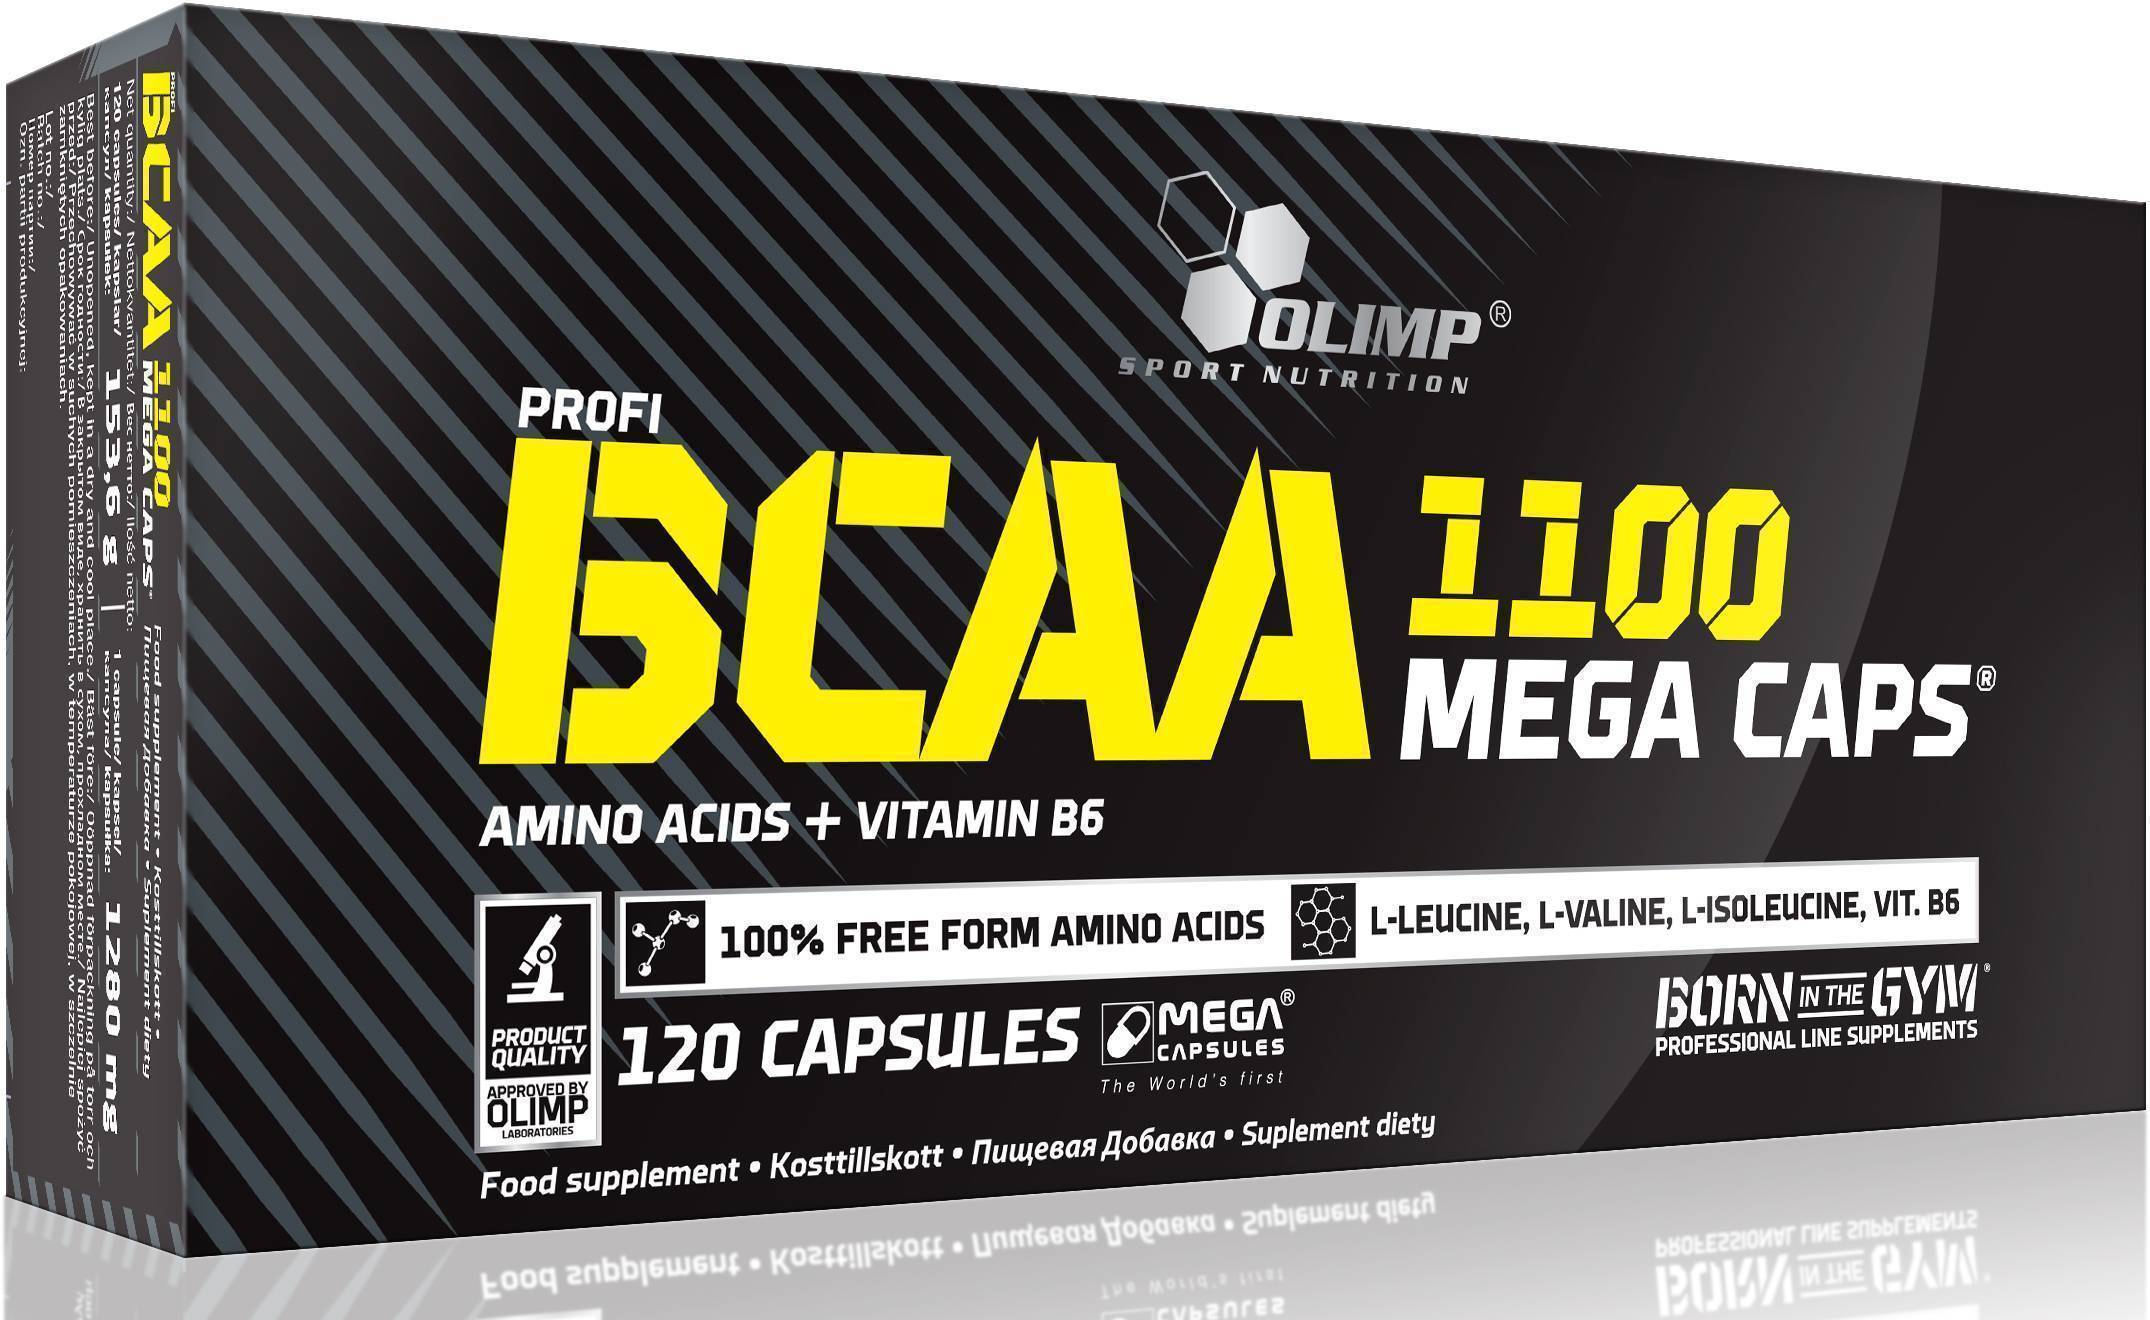 Аминокислоты ВСАА для спорта BCAA Mega 1100 Olimp Nutrition 120капс (28283003)